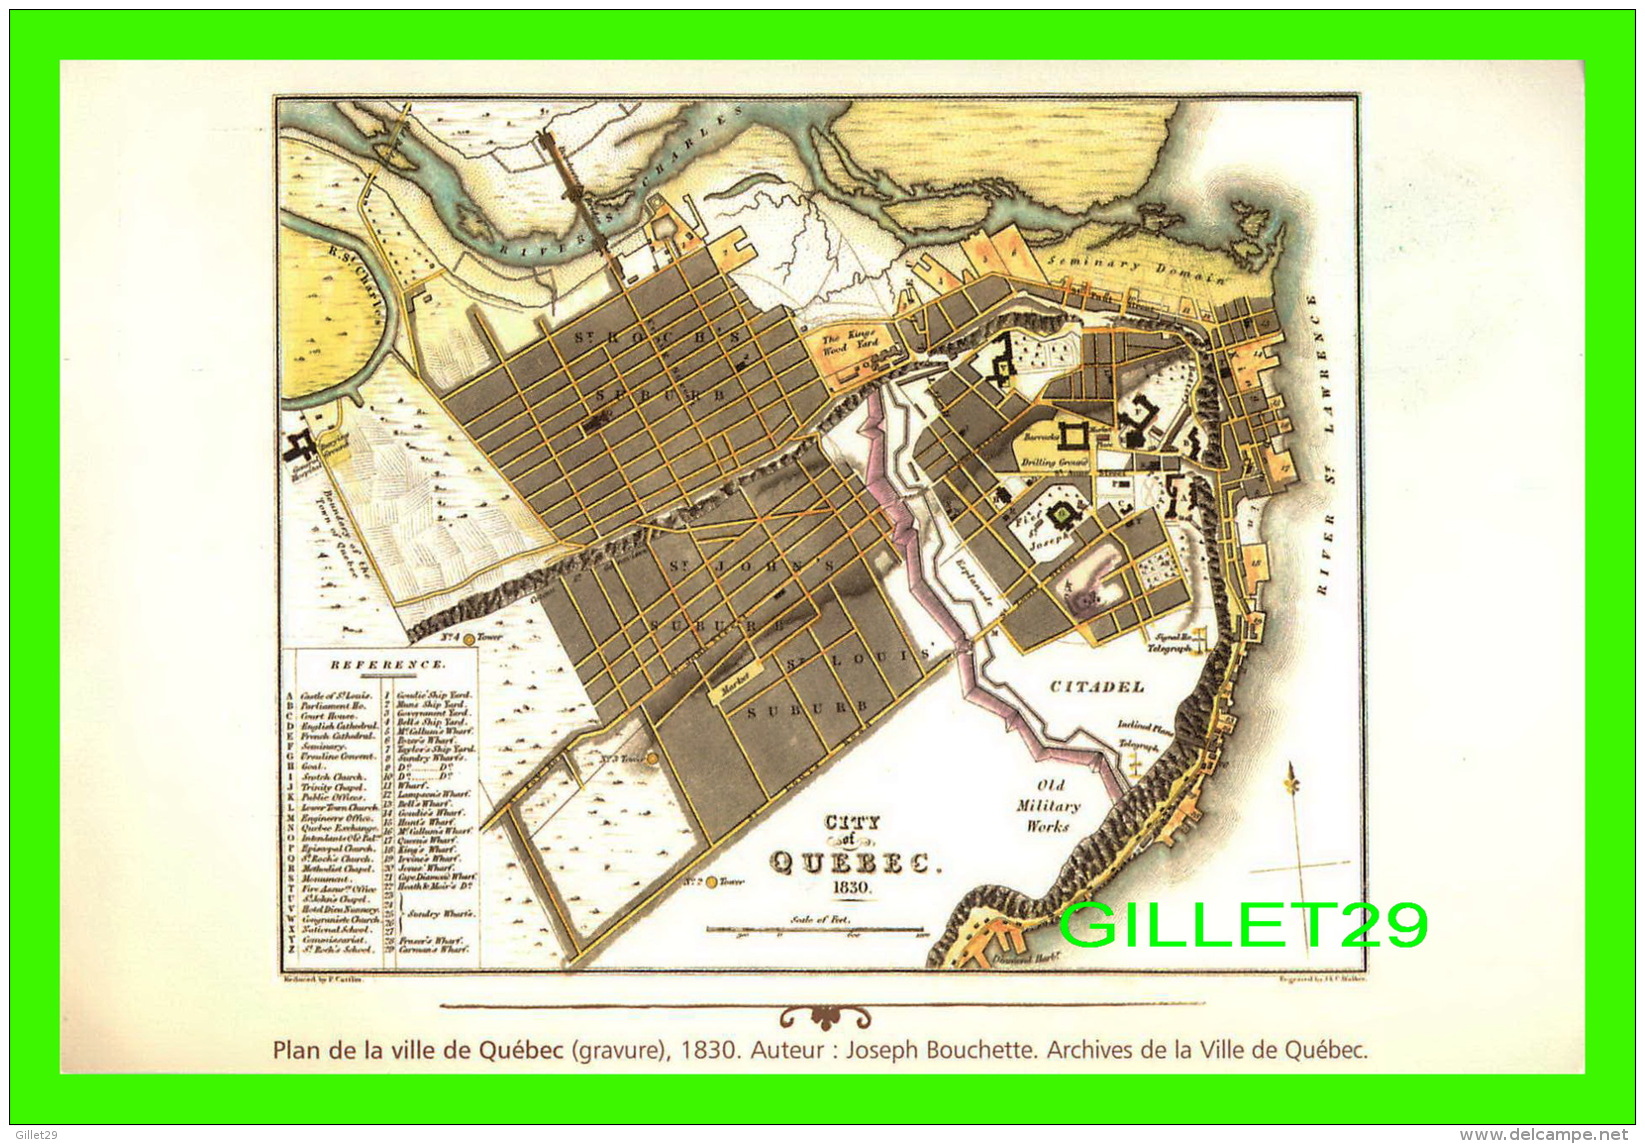 MAPS, CARTES GÉOGRAPHIQUES - PLAN DE LA VILLE DE QUÉBEC, GRAVURE DE 1830 - AUTEUR, JOSEPH BOUCHETTE - - Cartes Géographiques